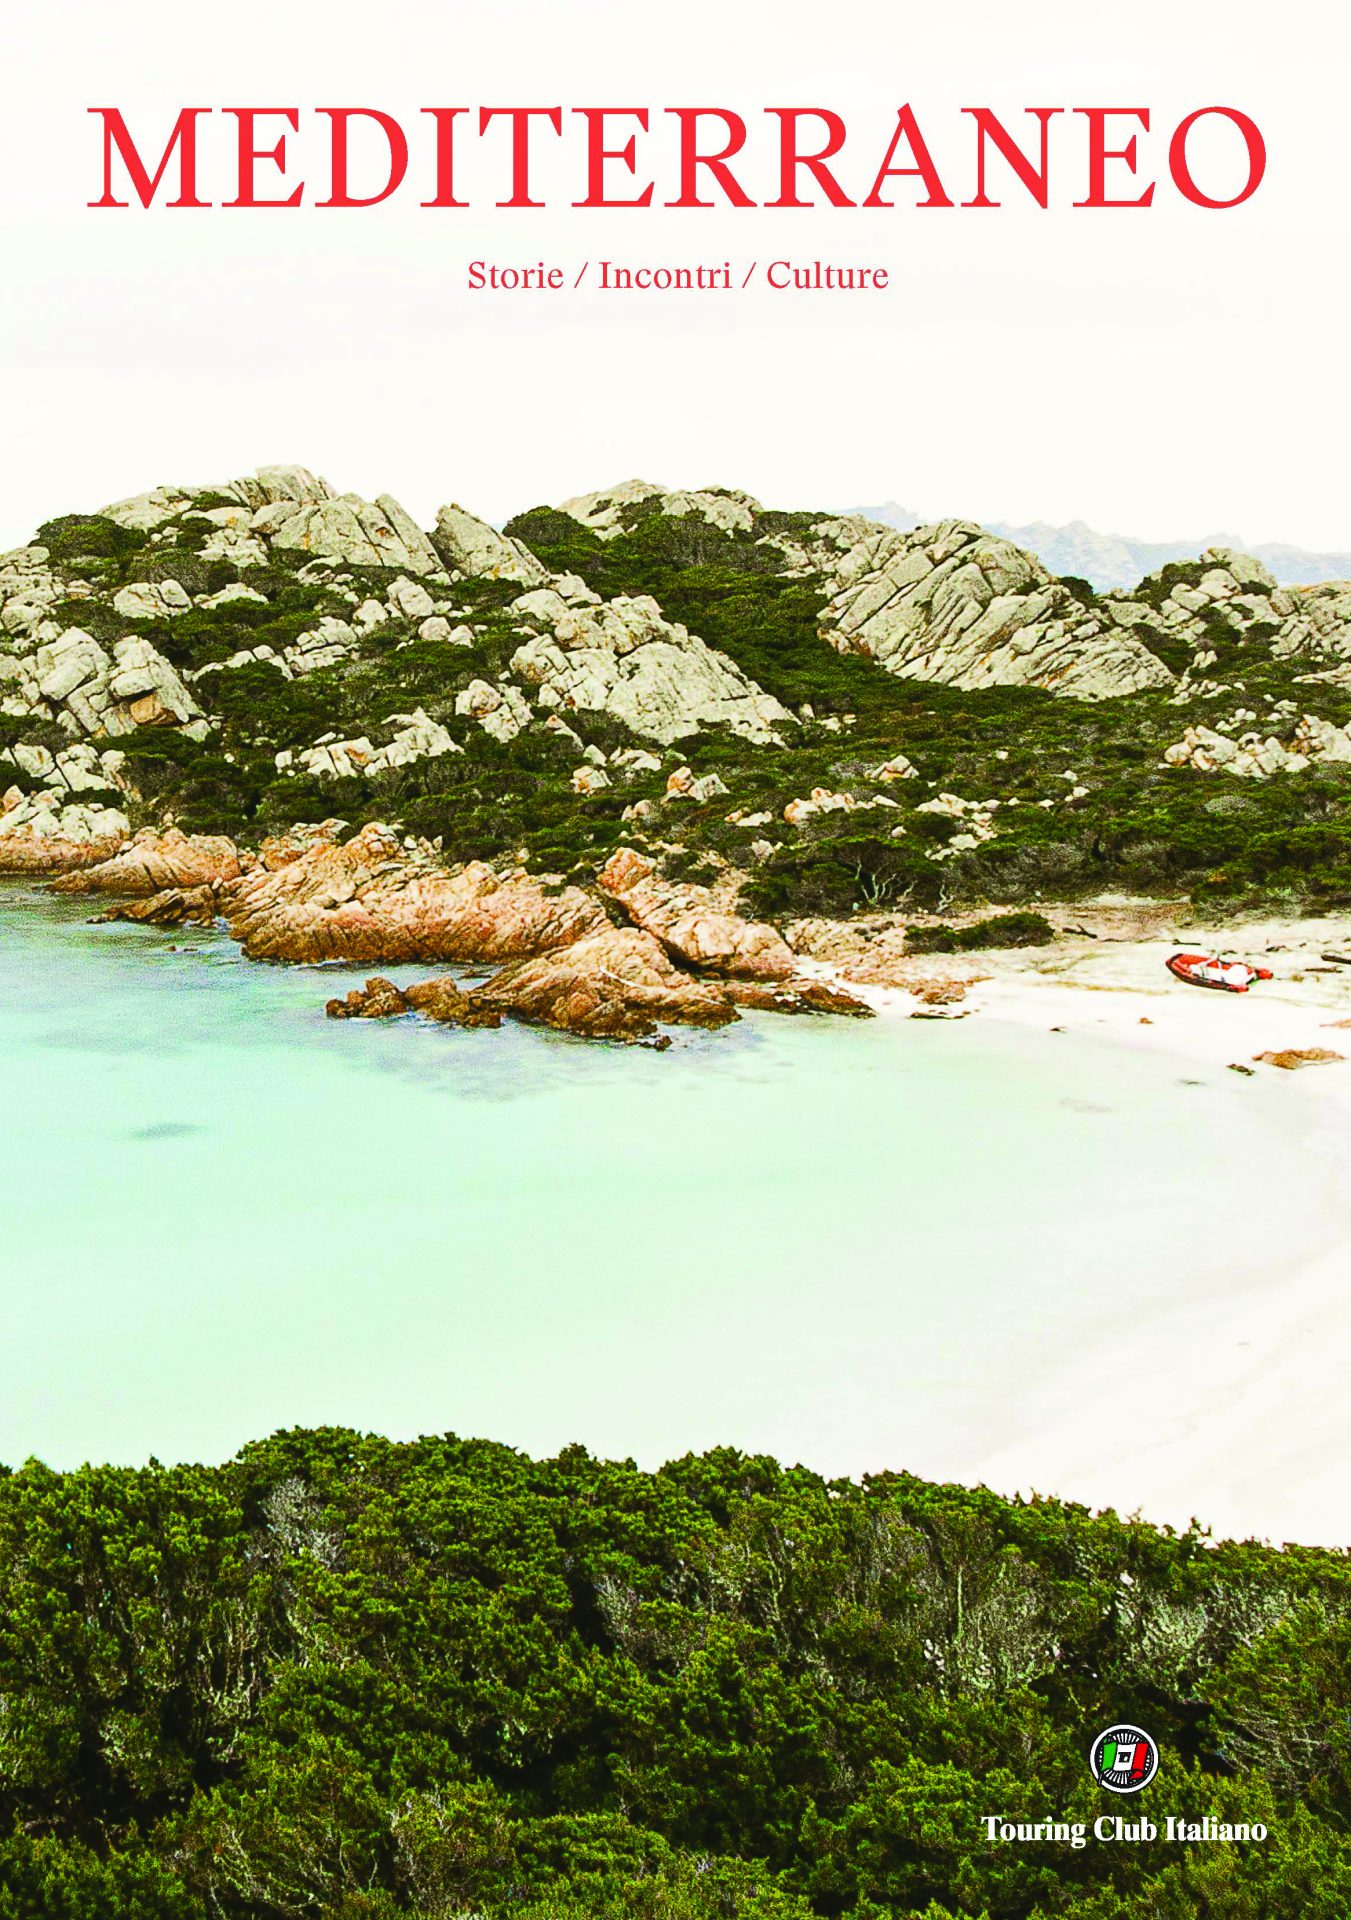 Copertina del libro sul Mediterraneo del Tci, con una foto di una costa con un'insenatura, rocce e vegetazione 